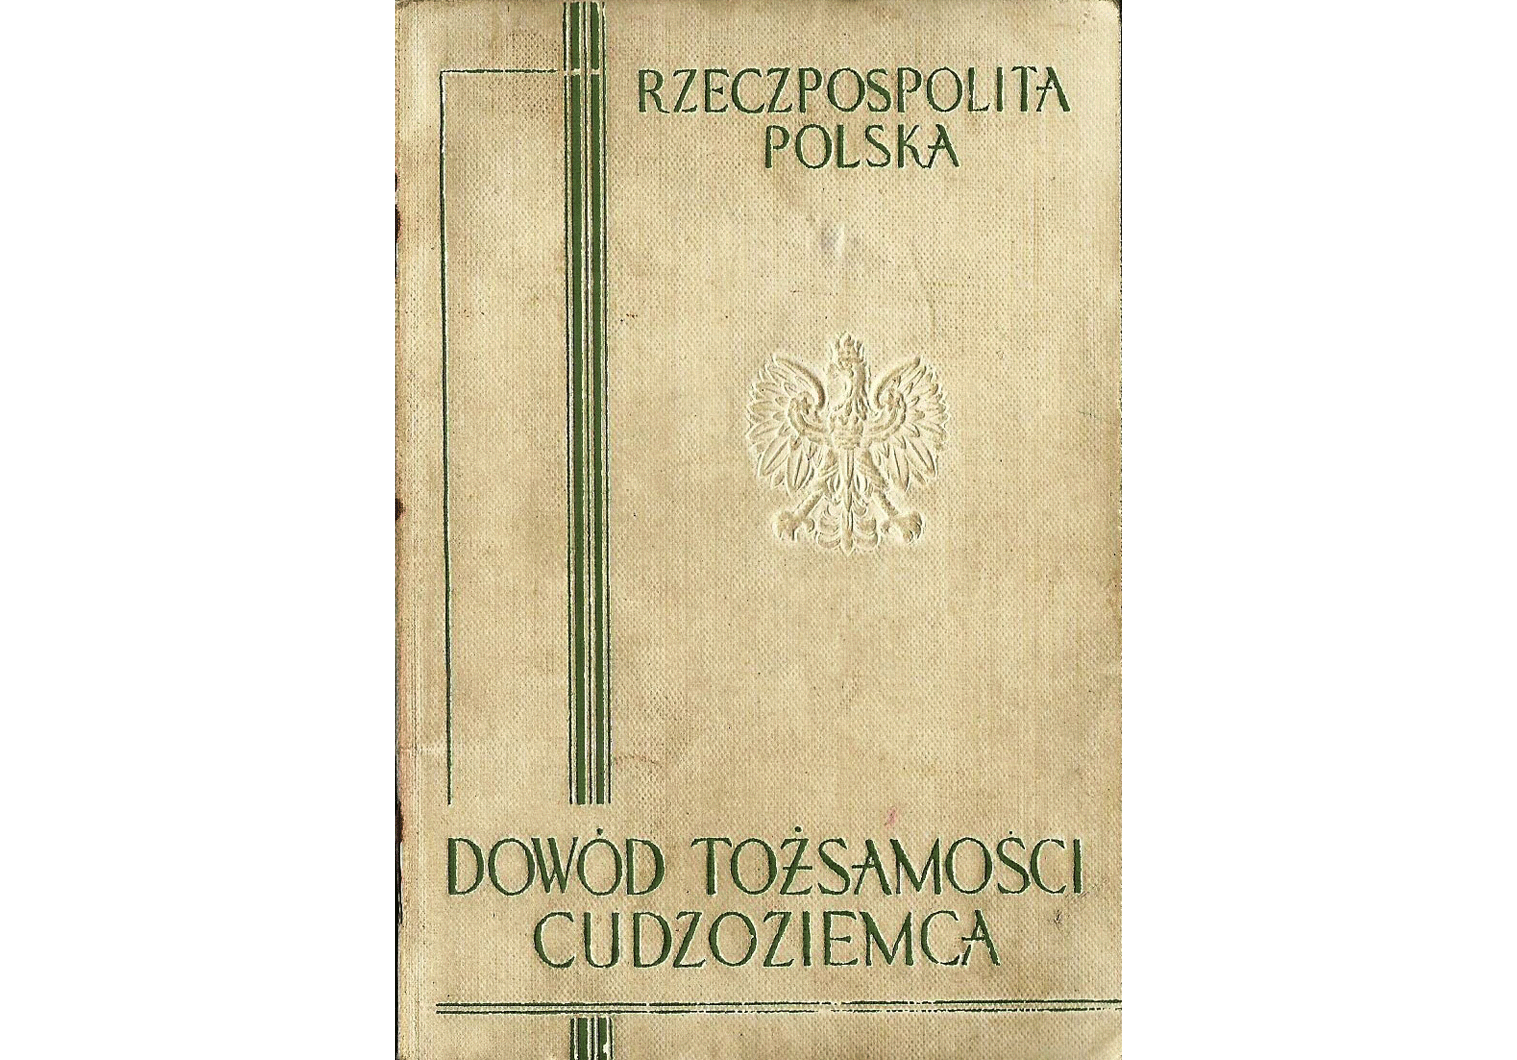 WW2 Polish travel document